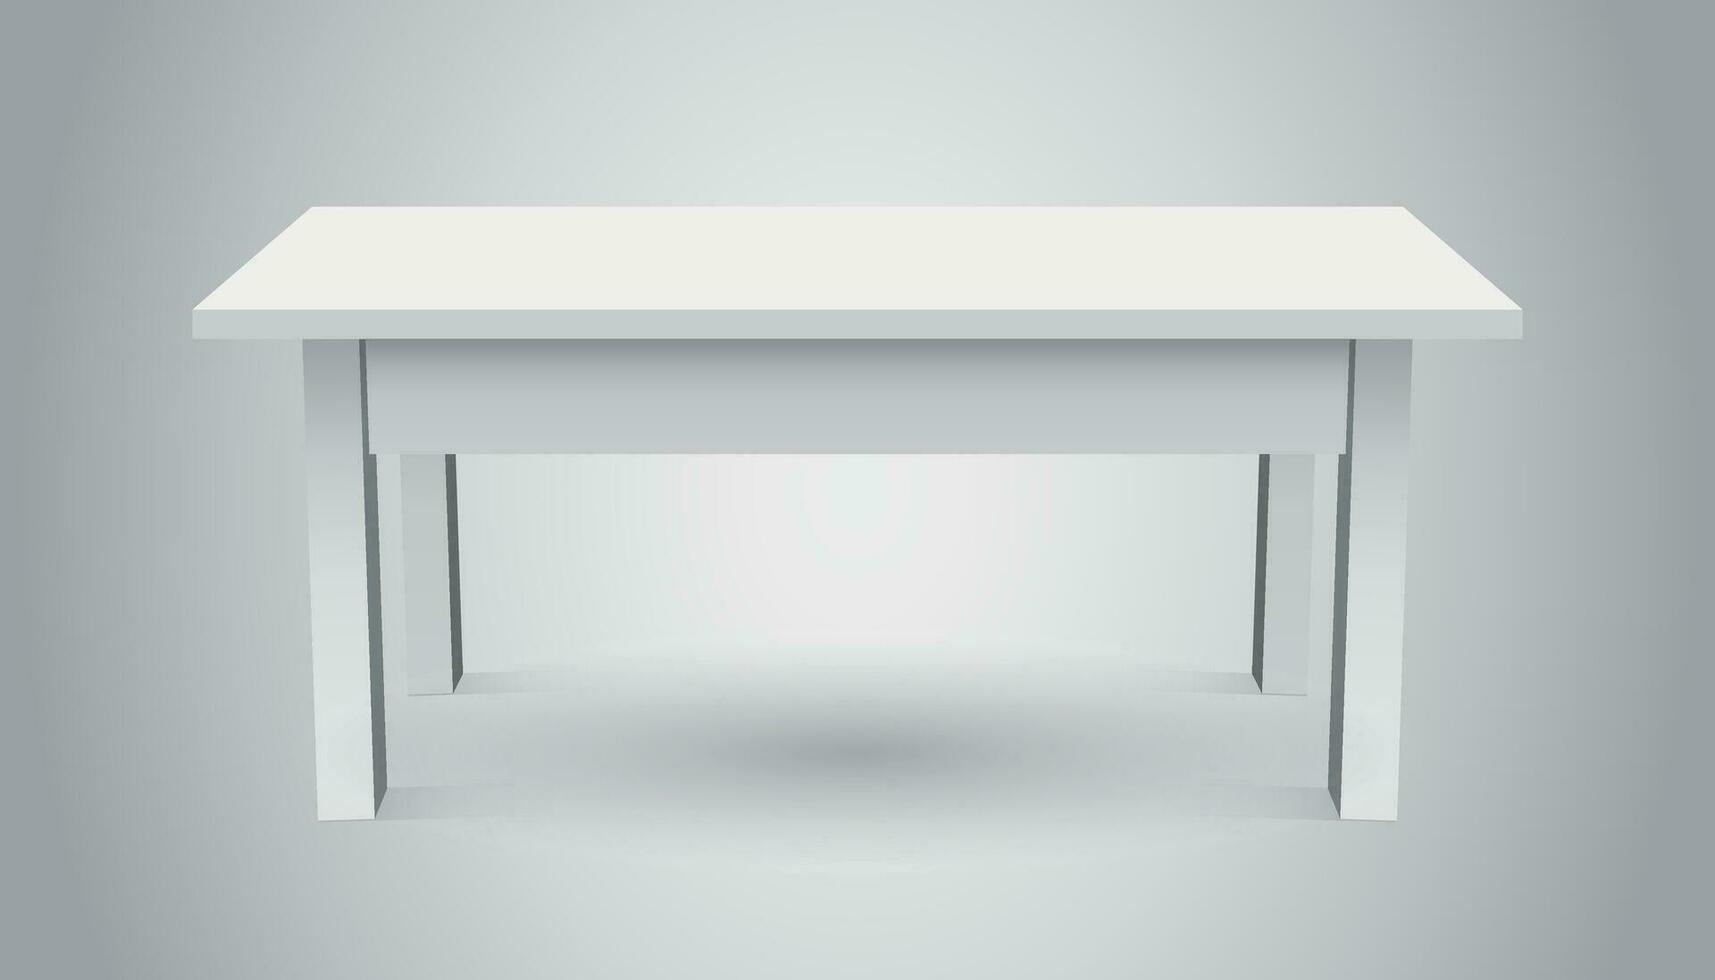 Vektor 3d Tabelle zum Objekt Präsentation. leeren Weiß oben Tabelle isoliert auf grau Hintergrund.